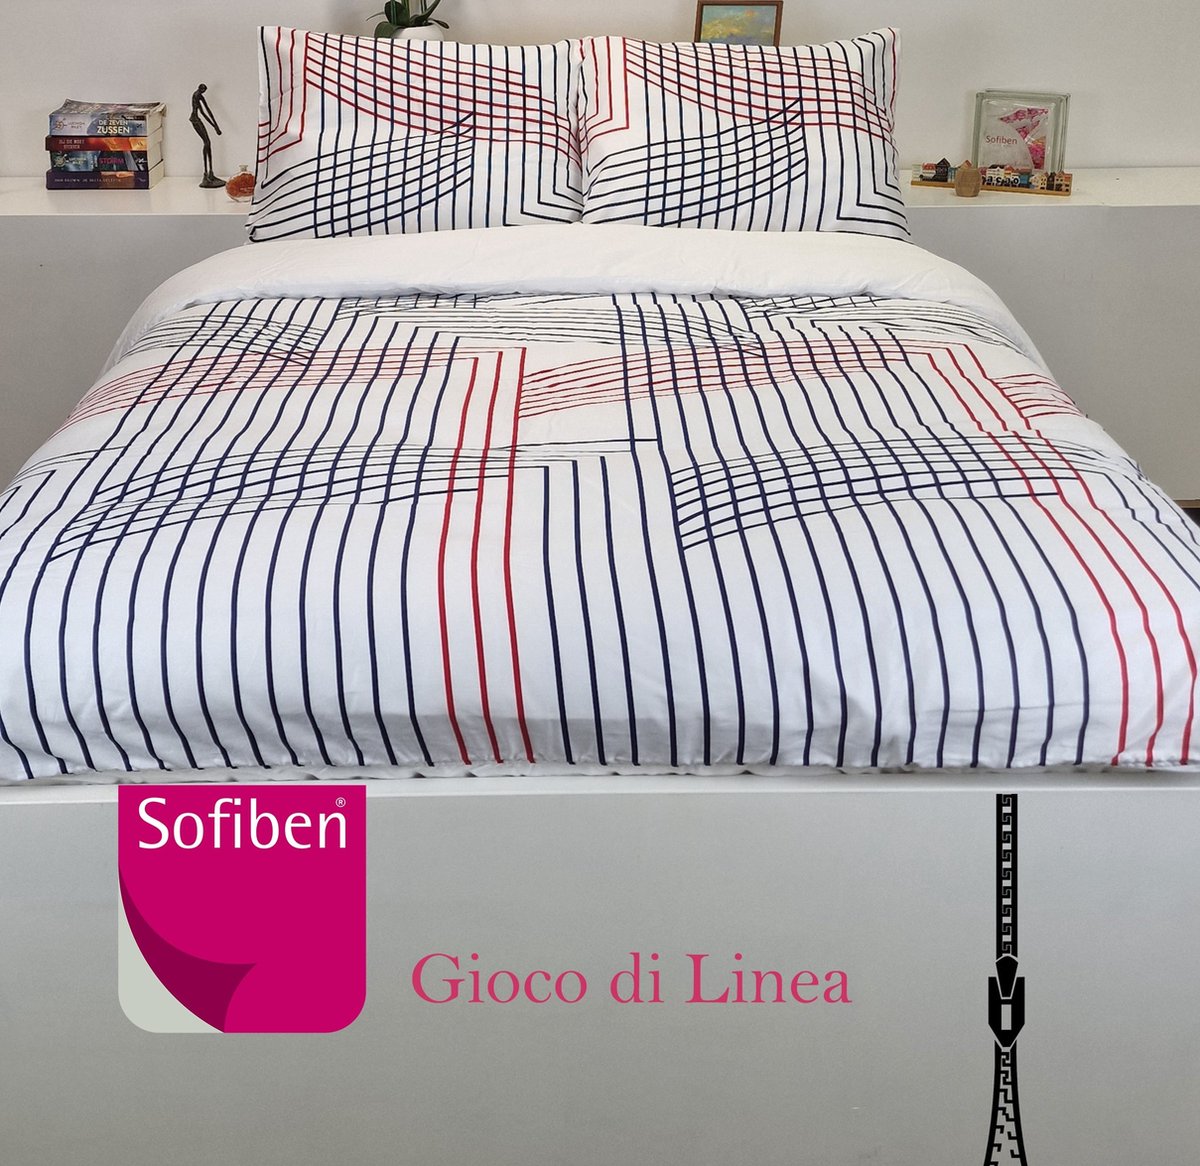 Sofiben - Celeste - Gioco di Linea - dekbedovertrek met een doorlopende rits over 3 zijden - afm. 200 x 200 cm.